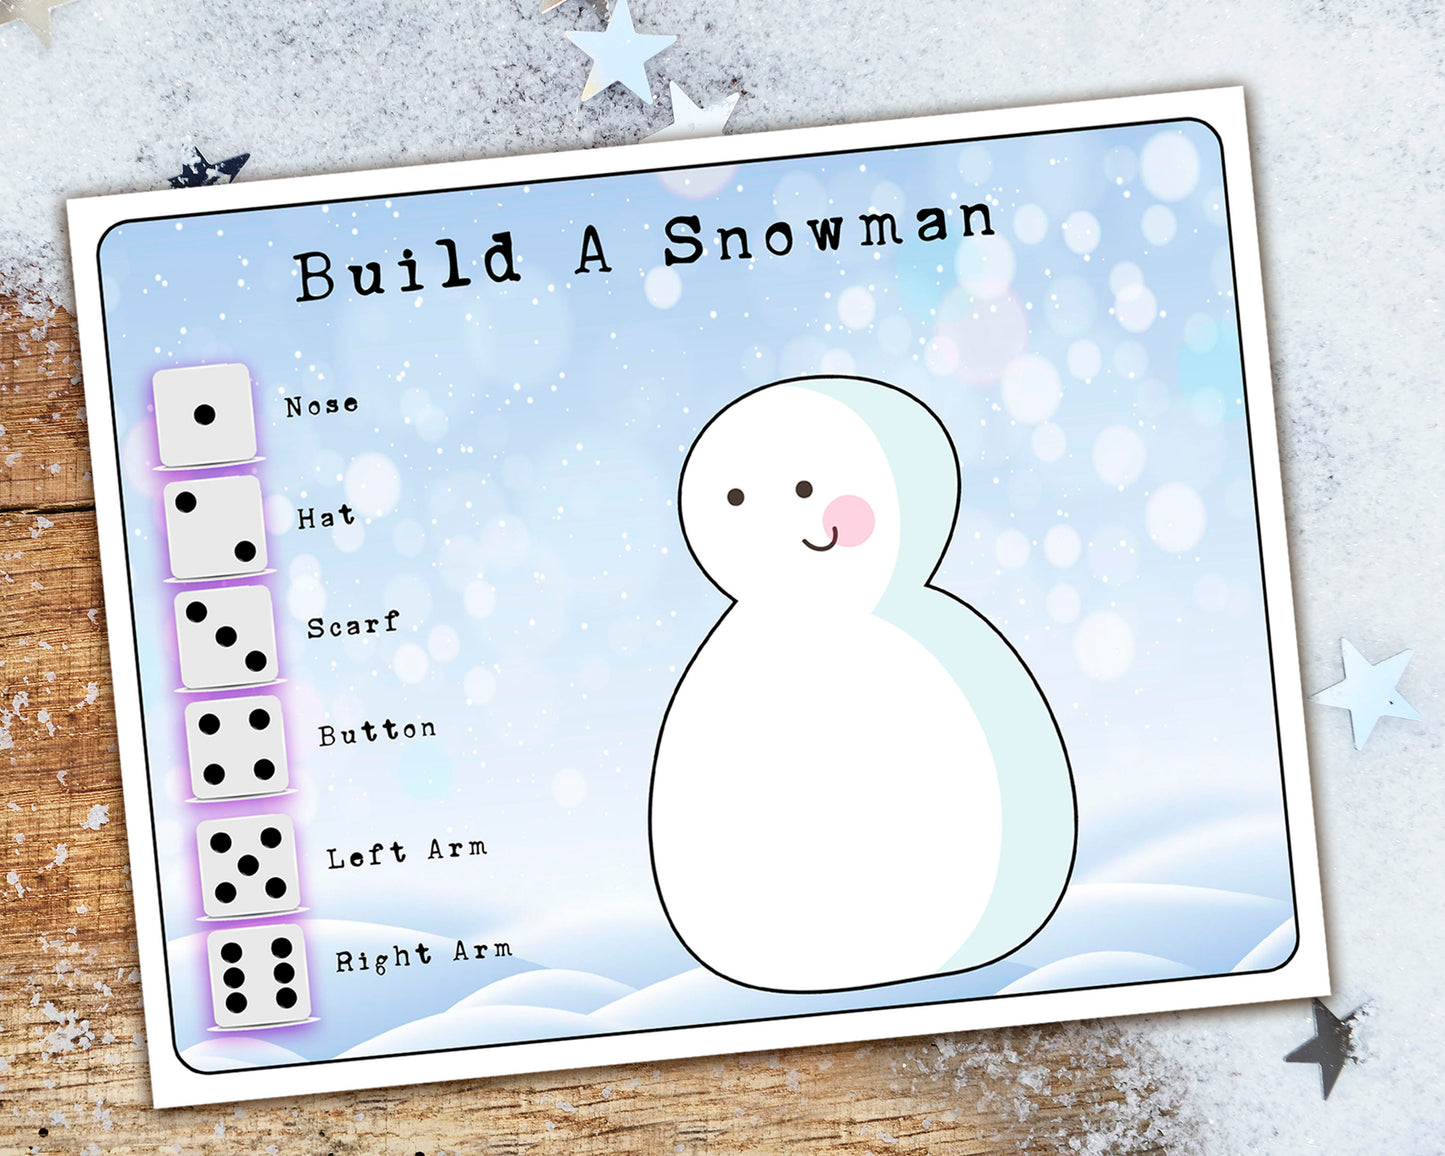 Roll A Snowman Game